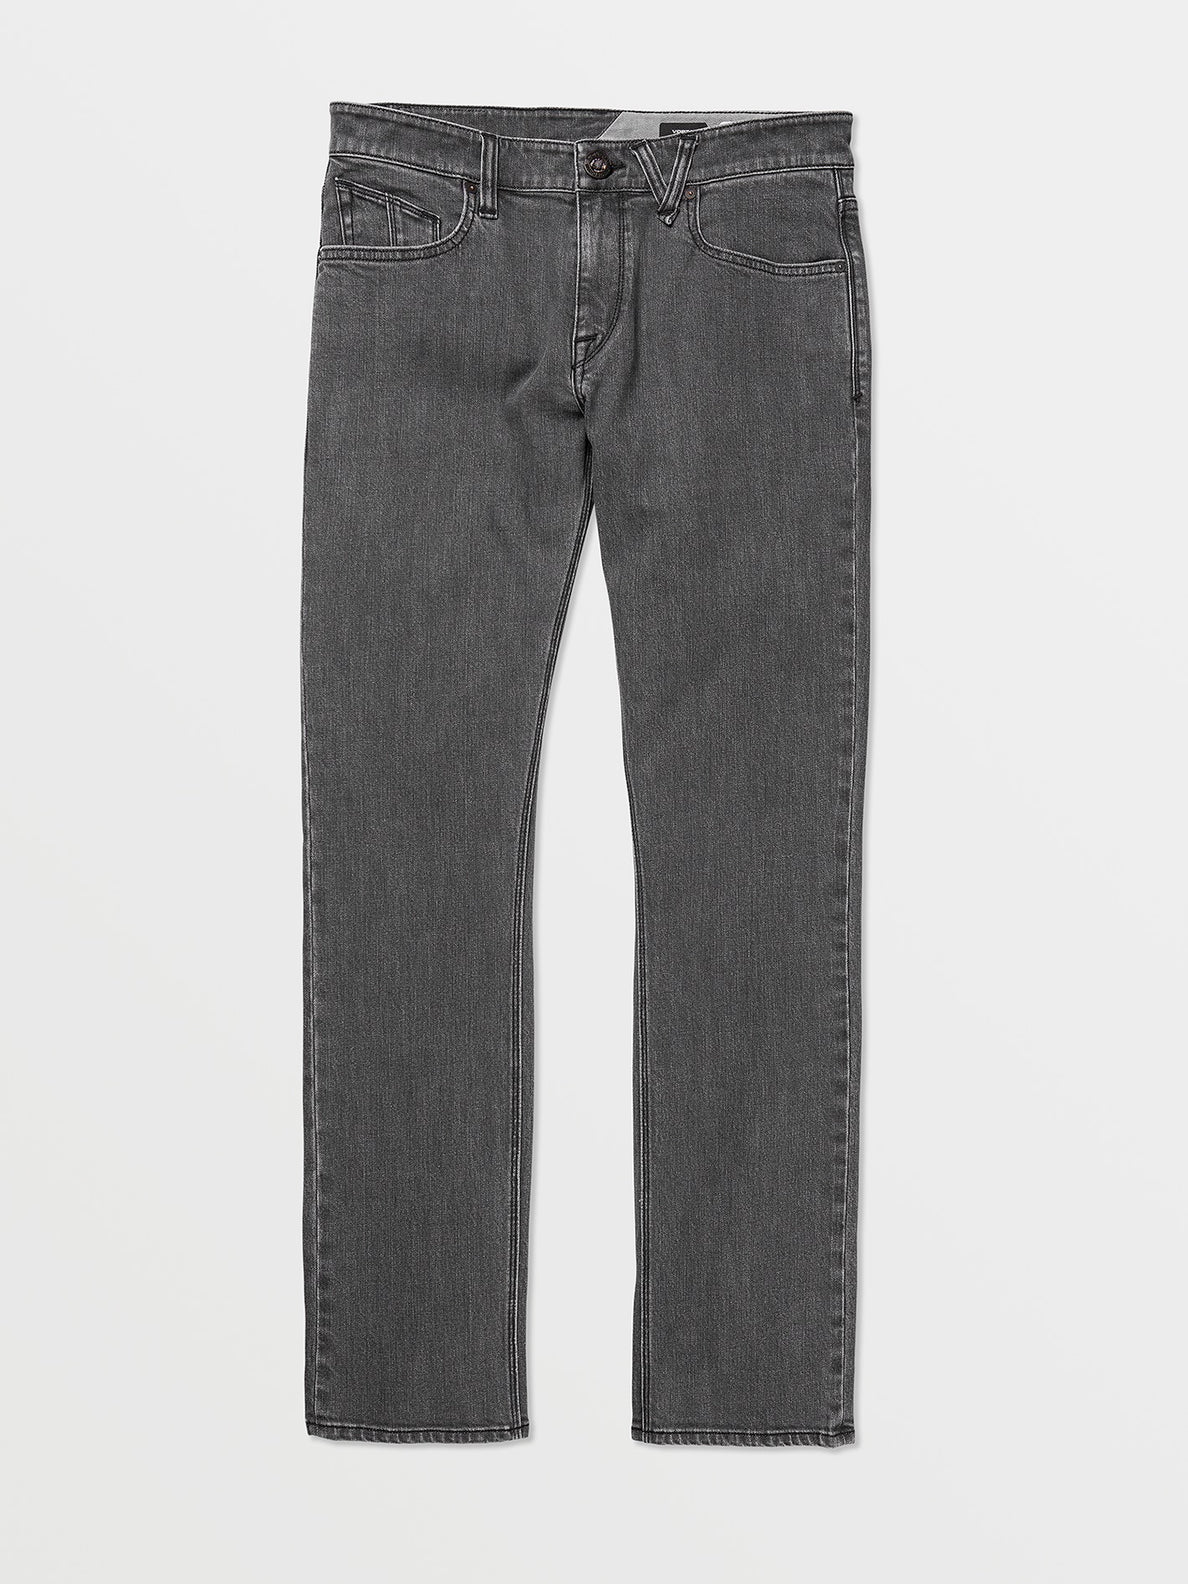 Buy Van Heusen Grey Jeans Online - 763393 | Van Heusen